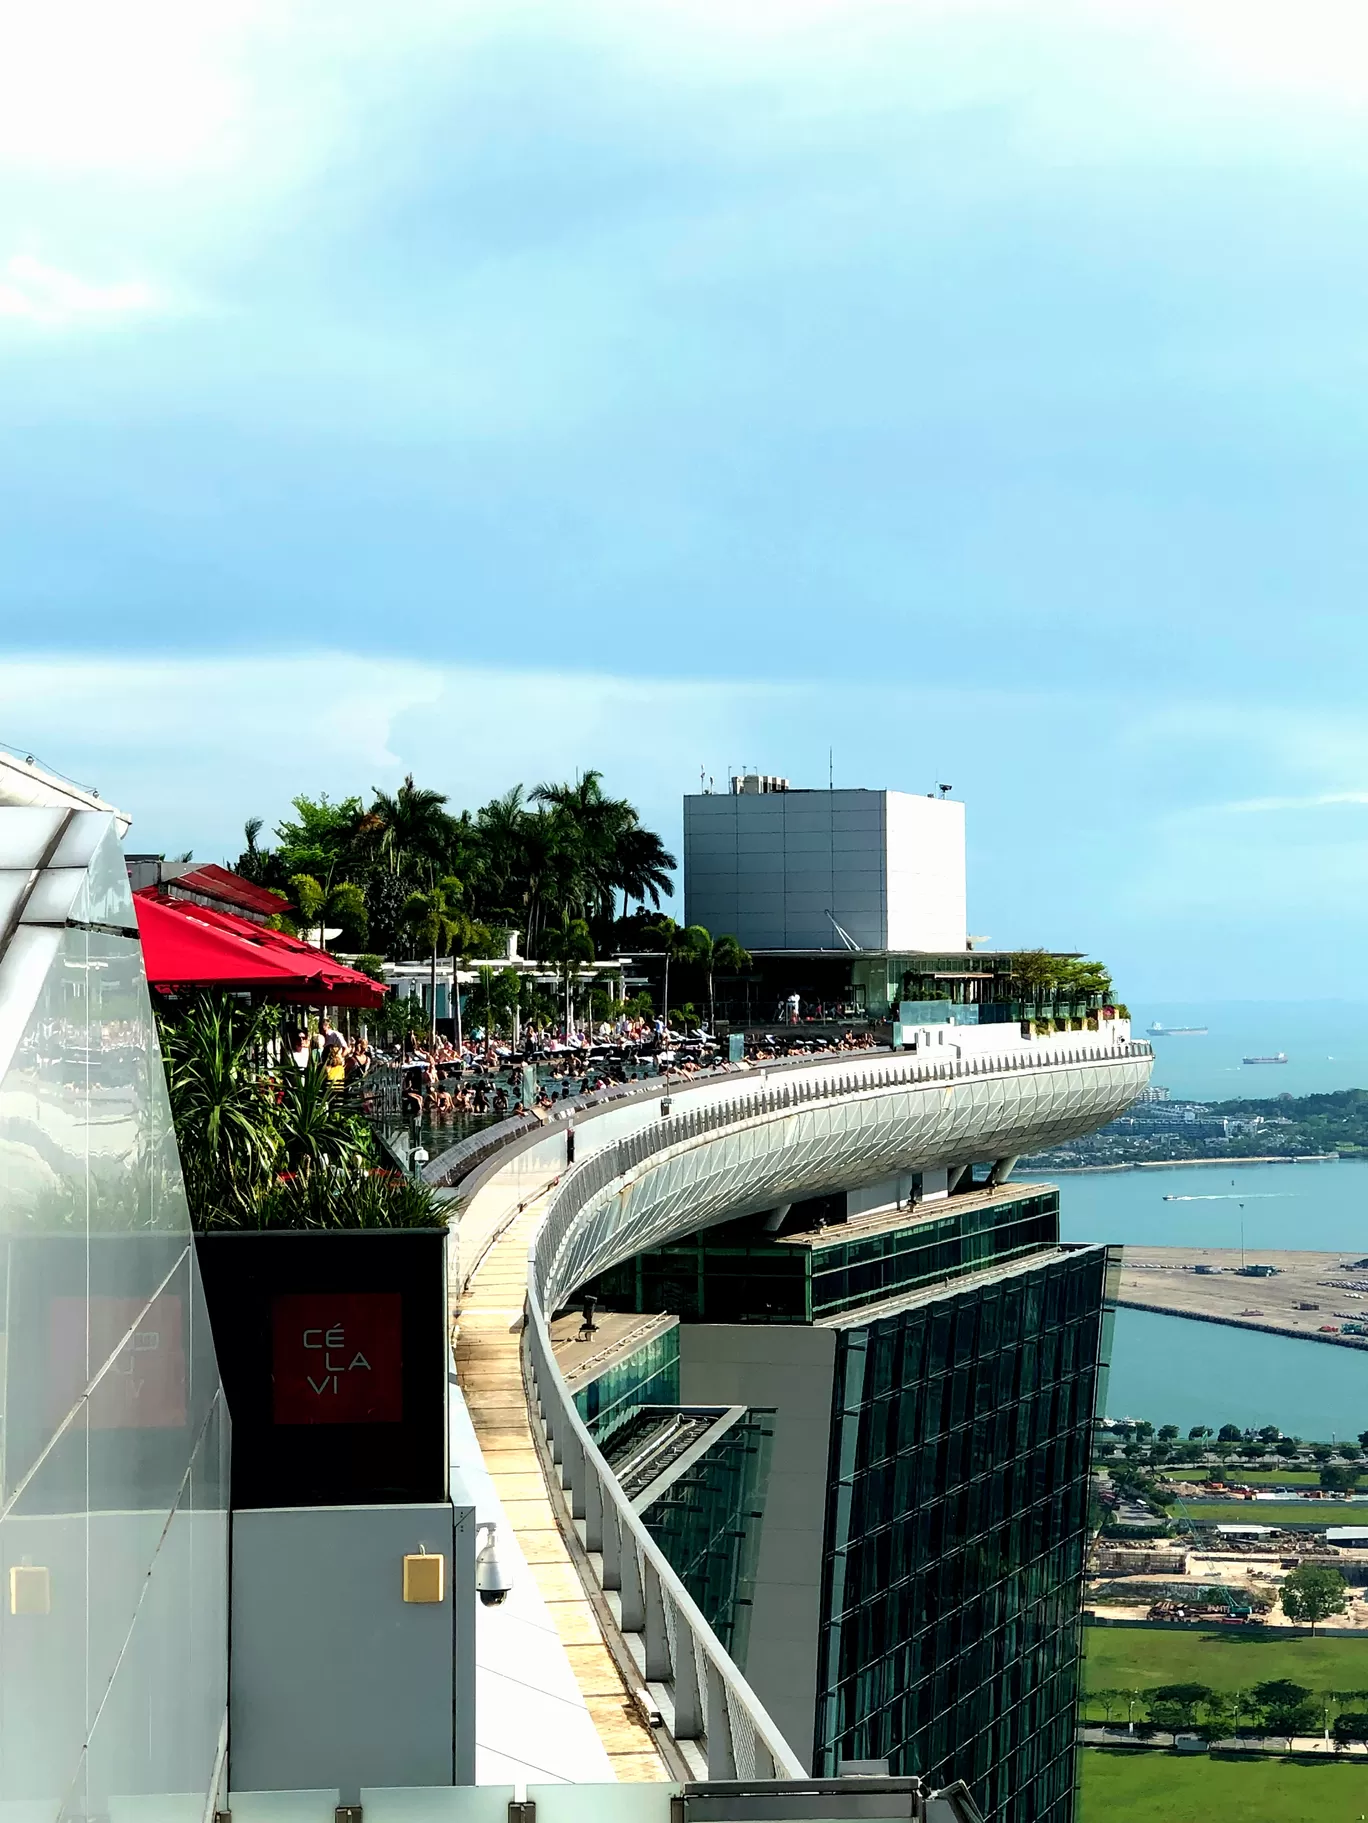 Photo of Singapore By Divyangna (Nomadic_Missy)